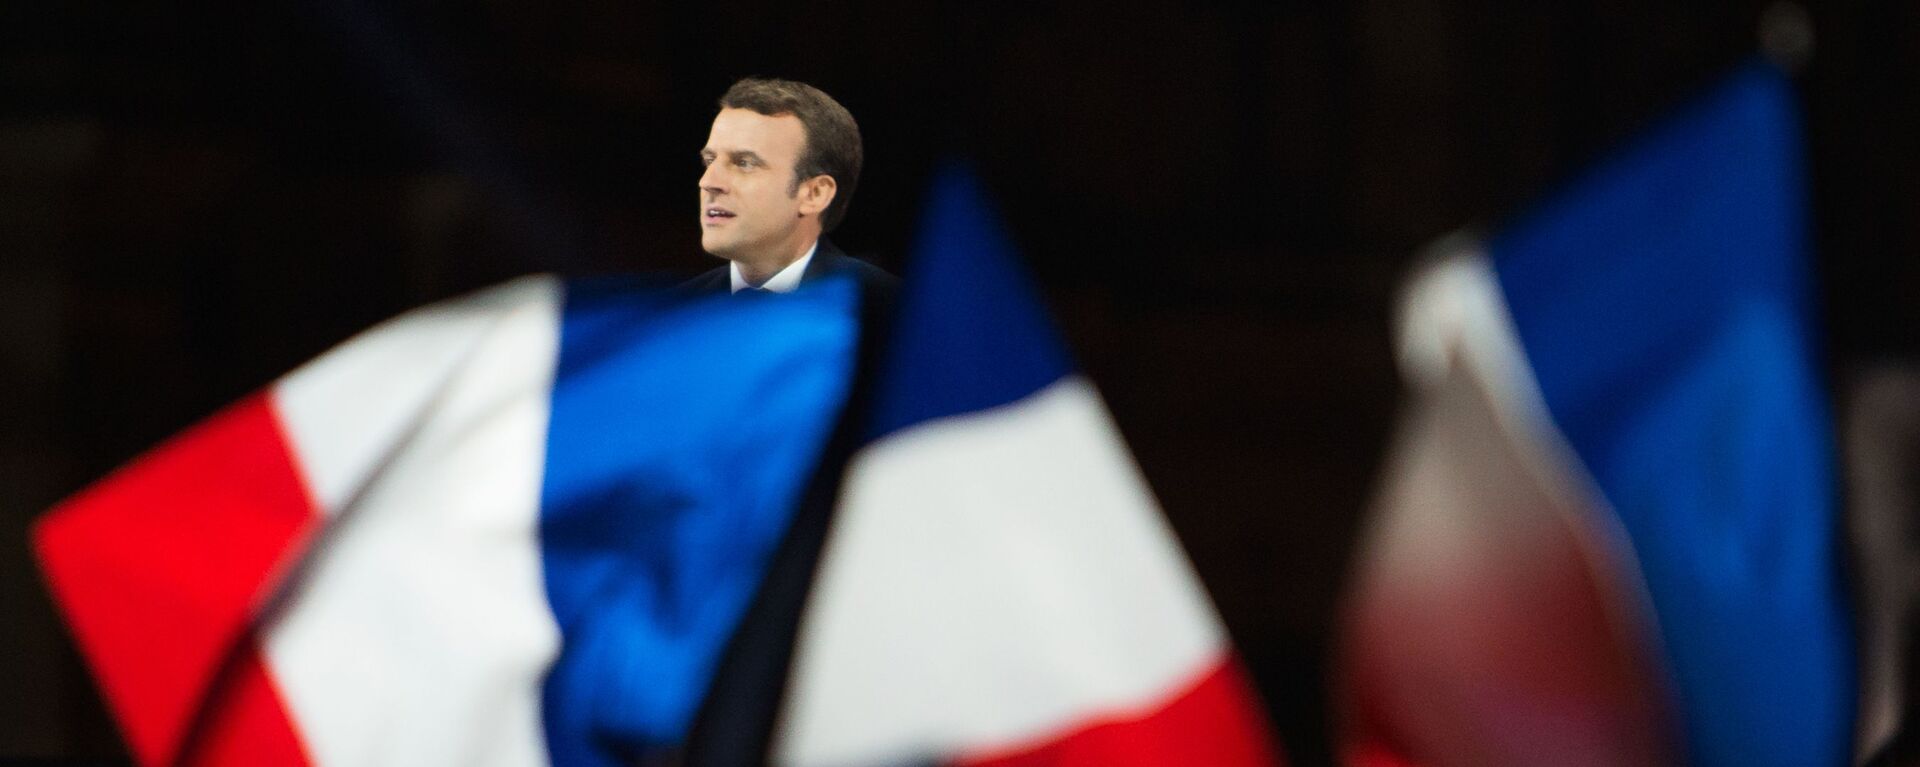 Paris. Tổng thống vừa đắc cử Emmanuel Macron phát biểu ở trước điện Louvre. - Sputnik Việt Nam, 1920, 29.08.2021